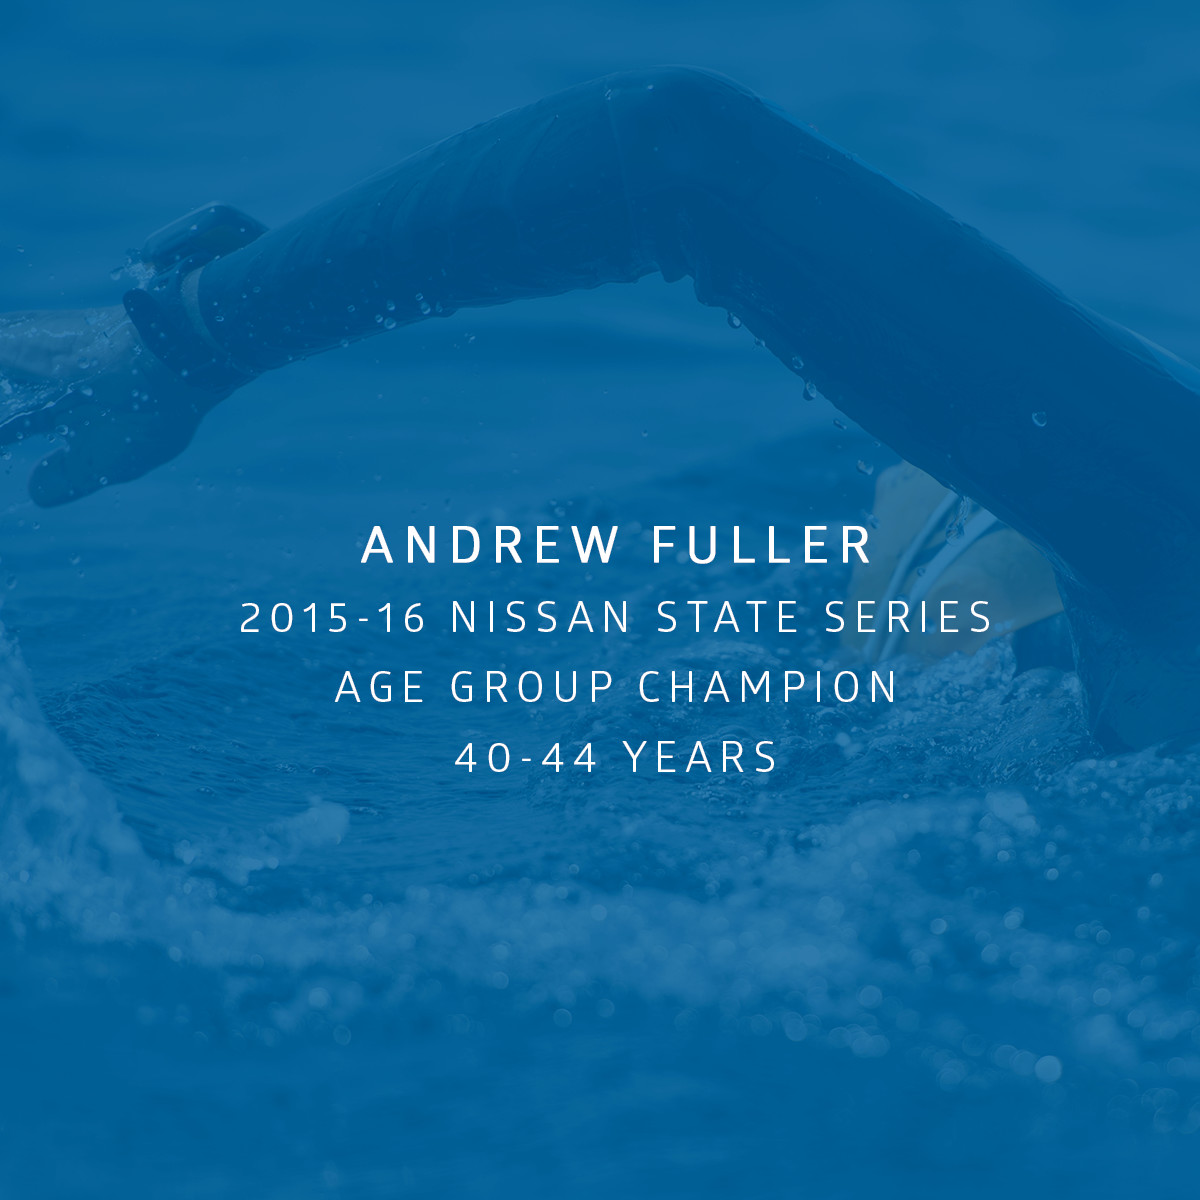 Andrew Fuller